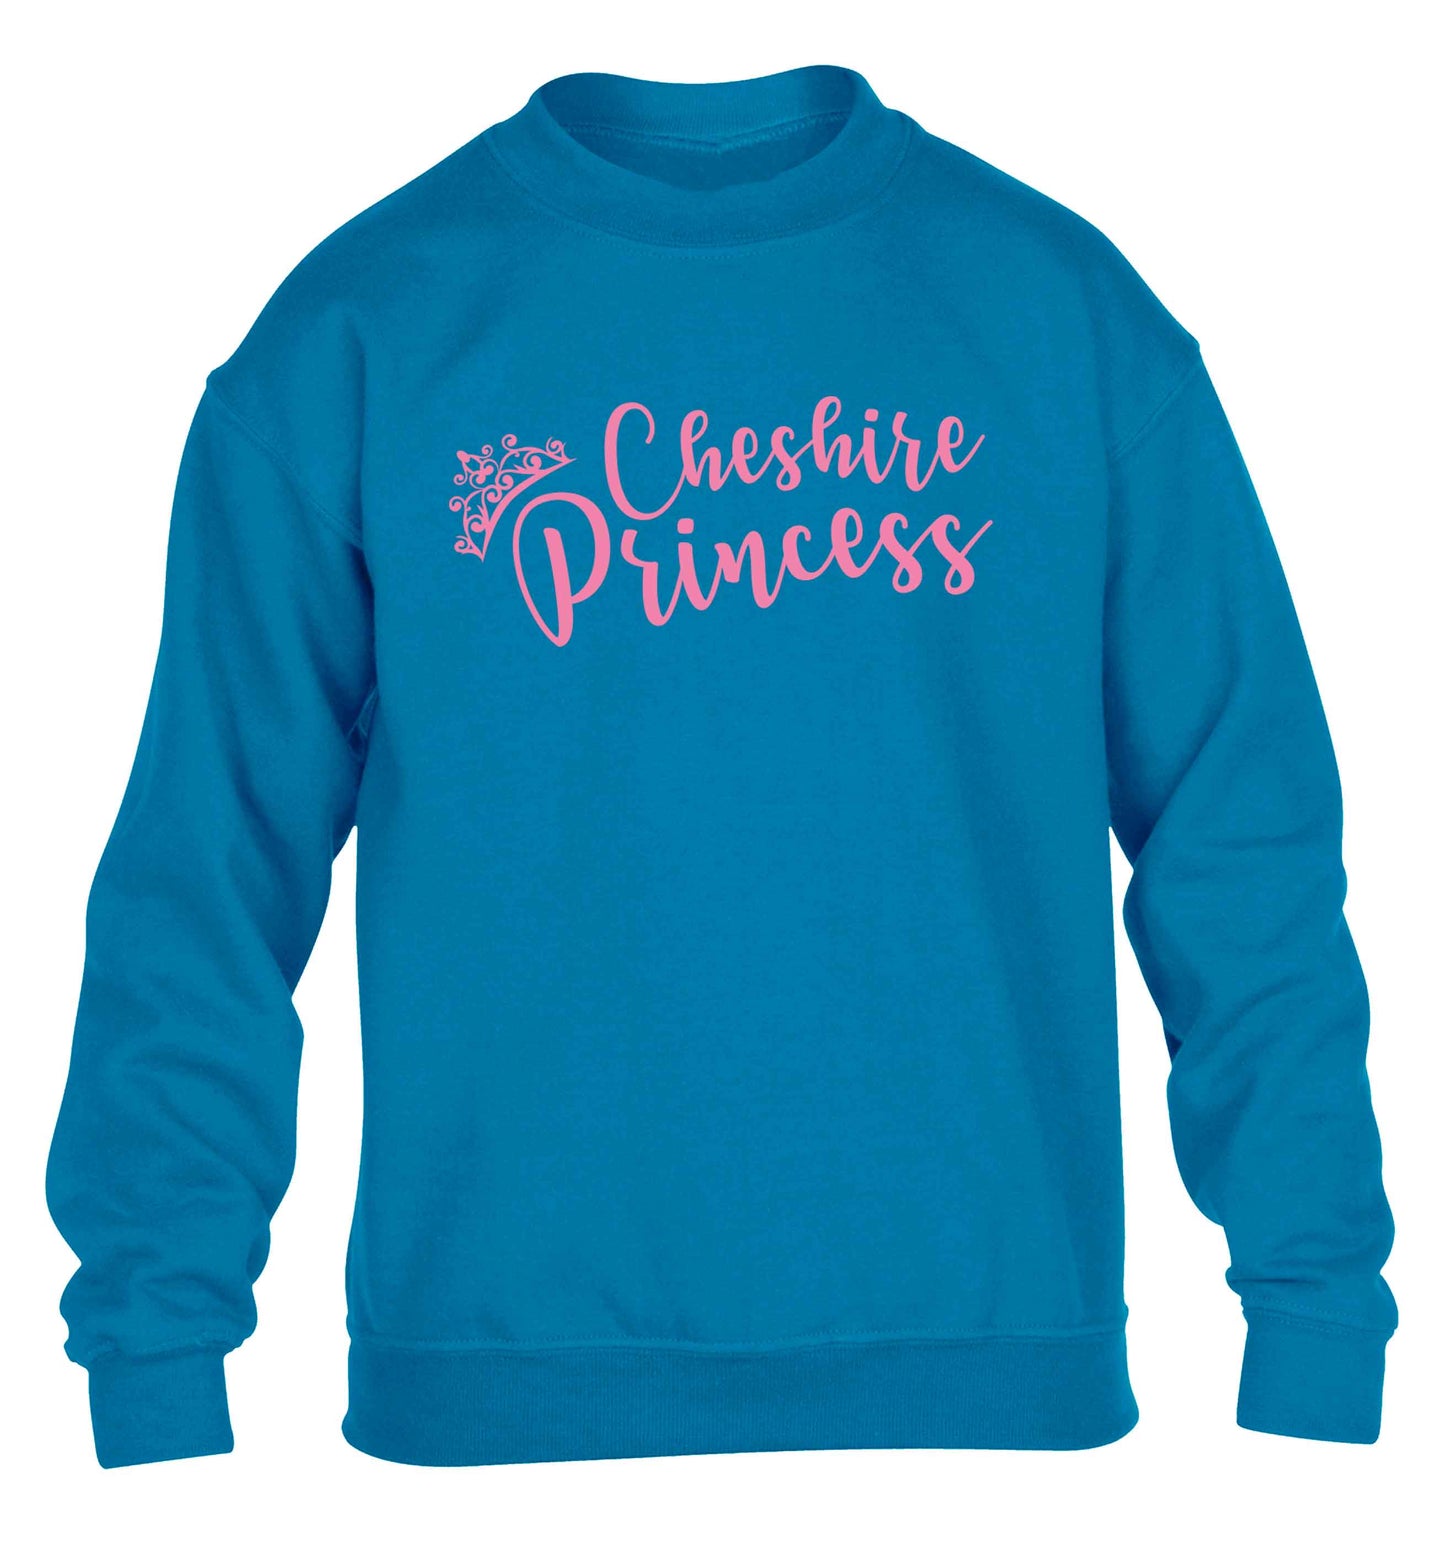 Cheshire princess children's blue sweater 12-13 Years